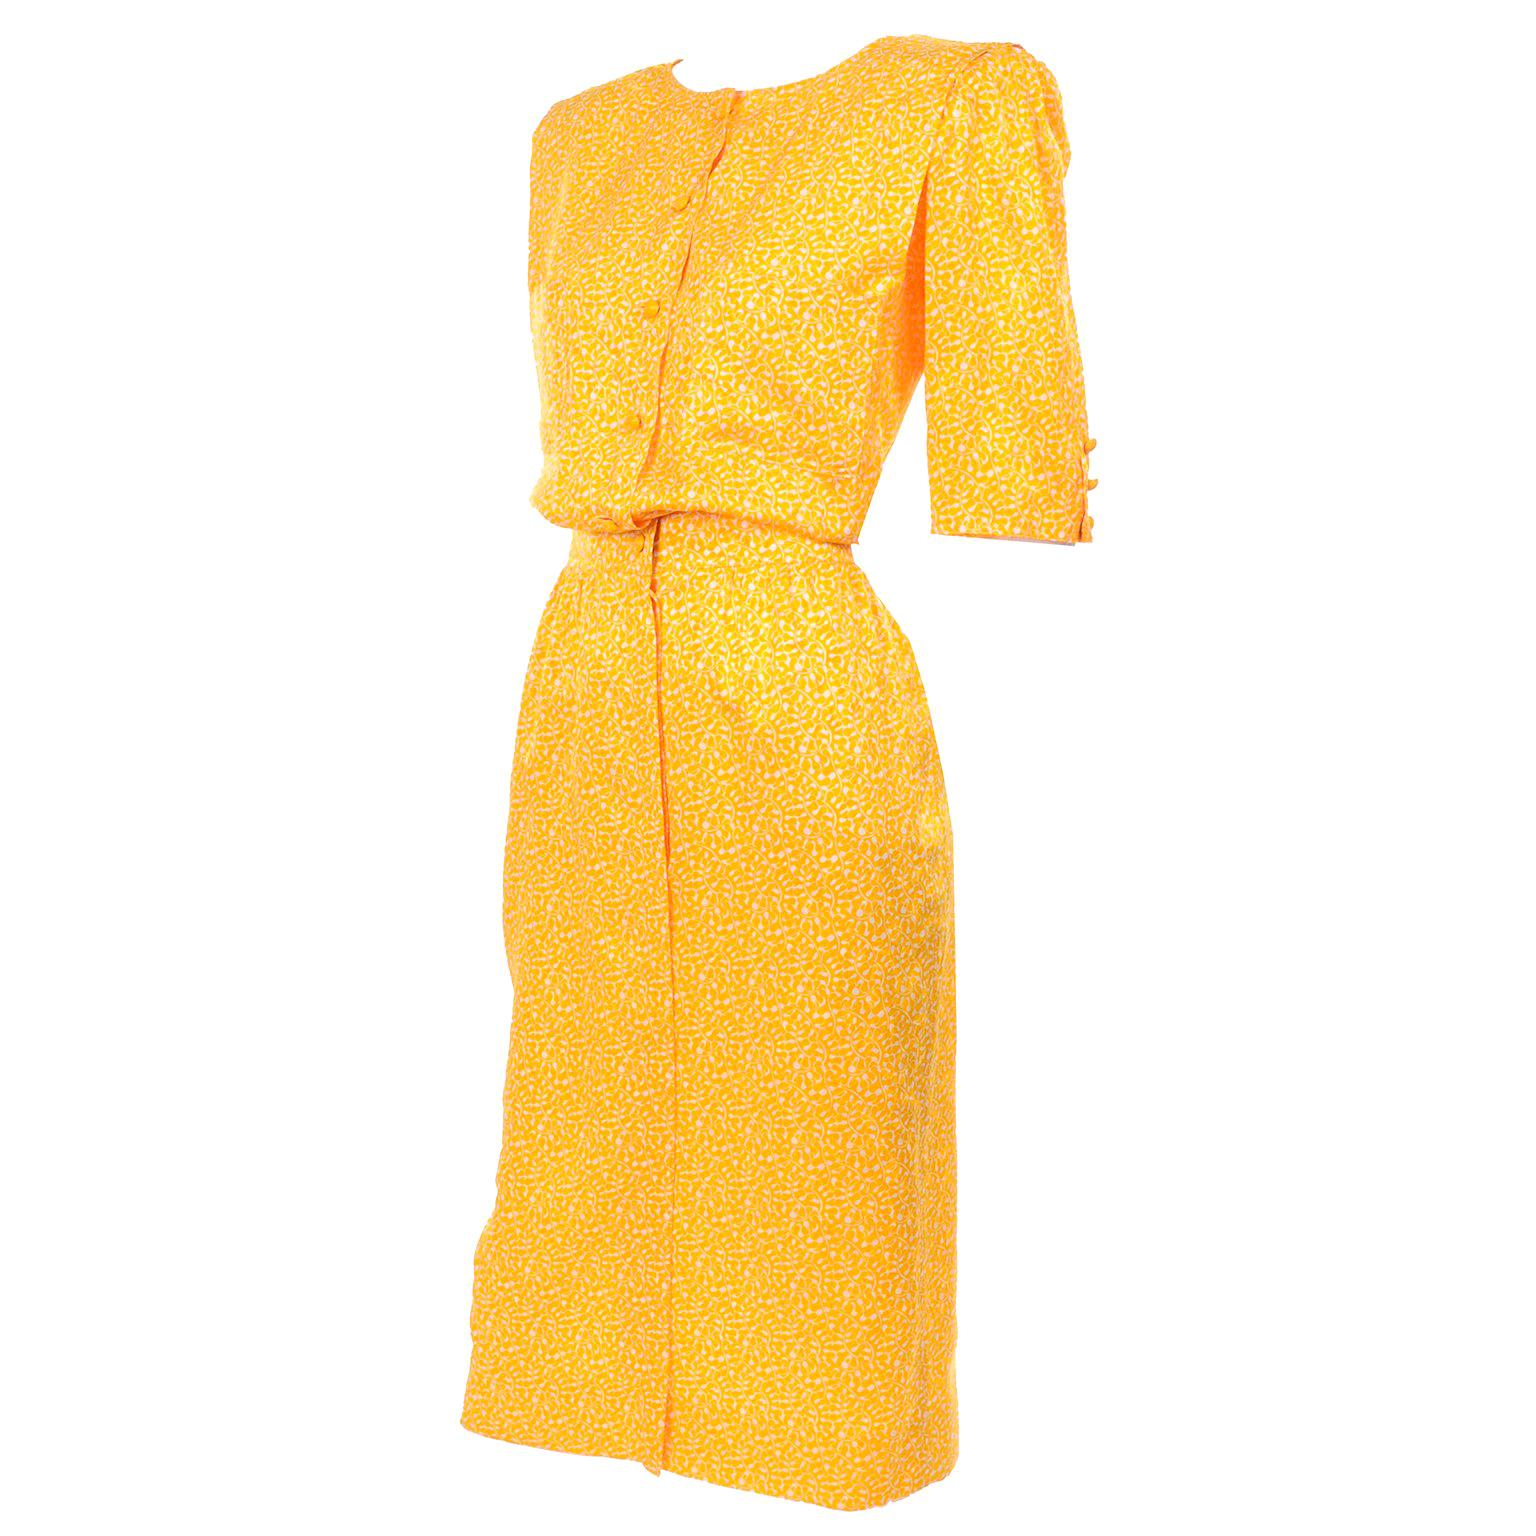 Vintage Ungaro Parallele Rayon Dress in Yellow & White Print